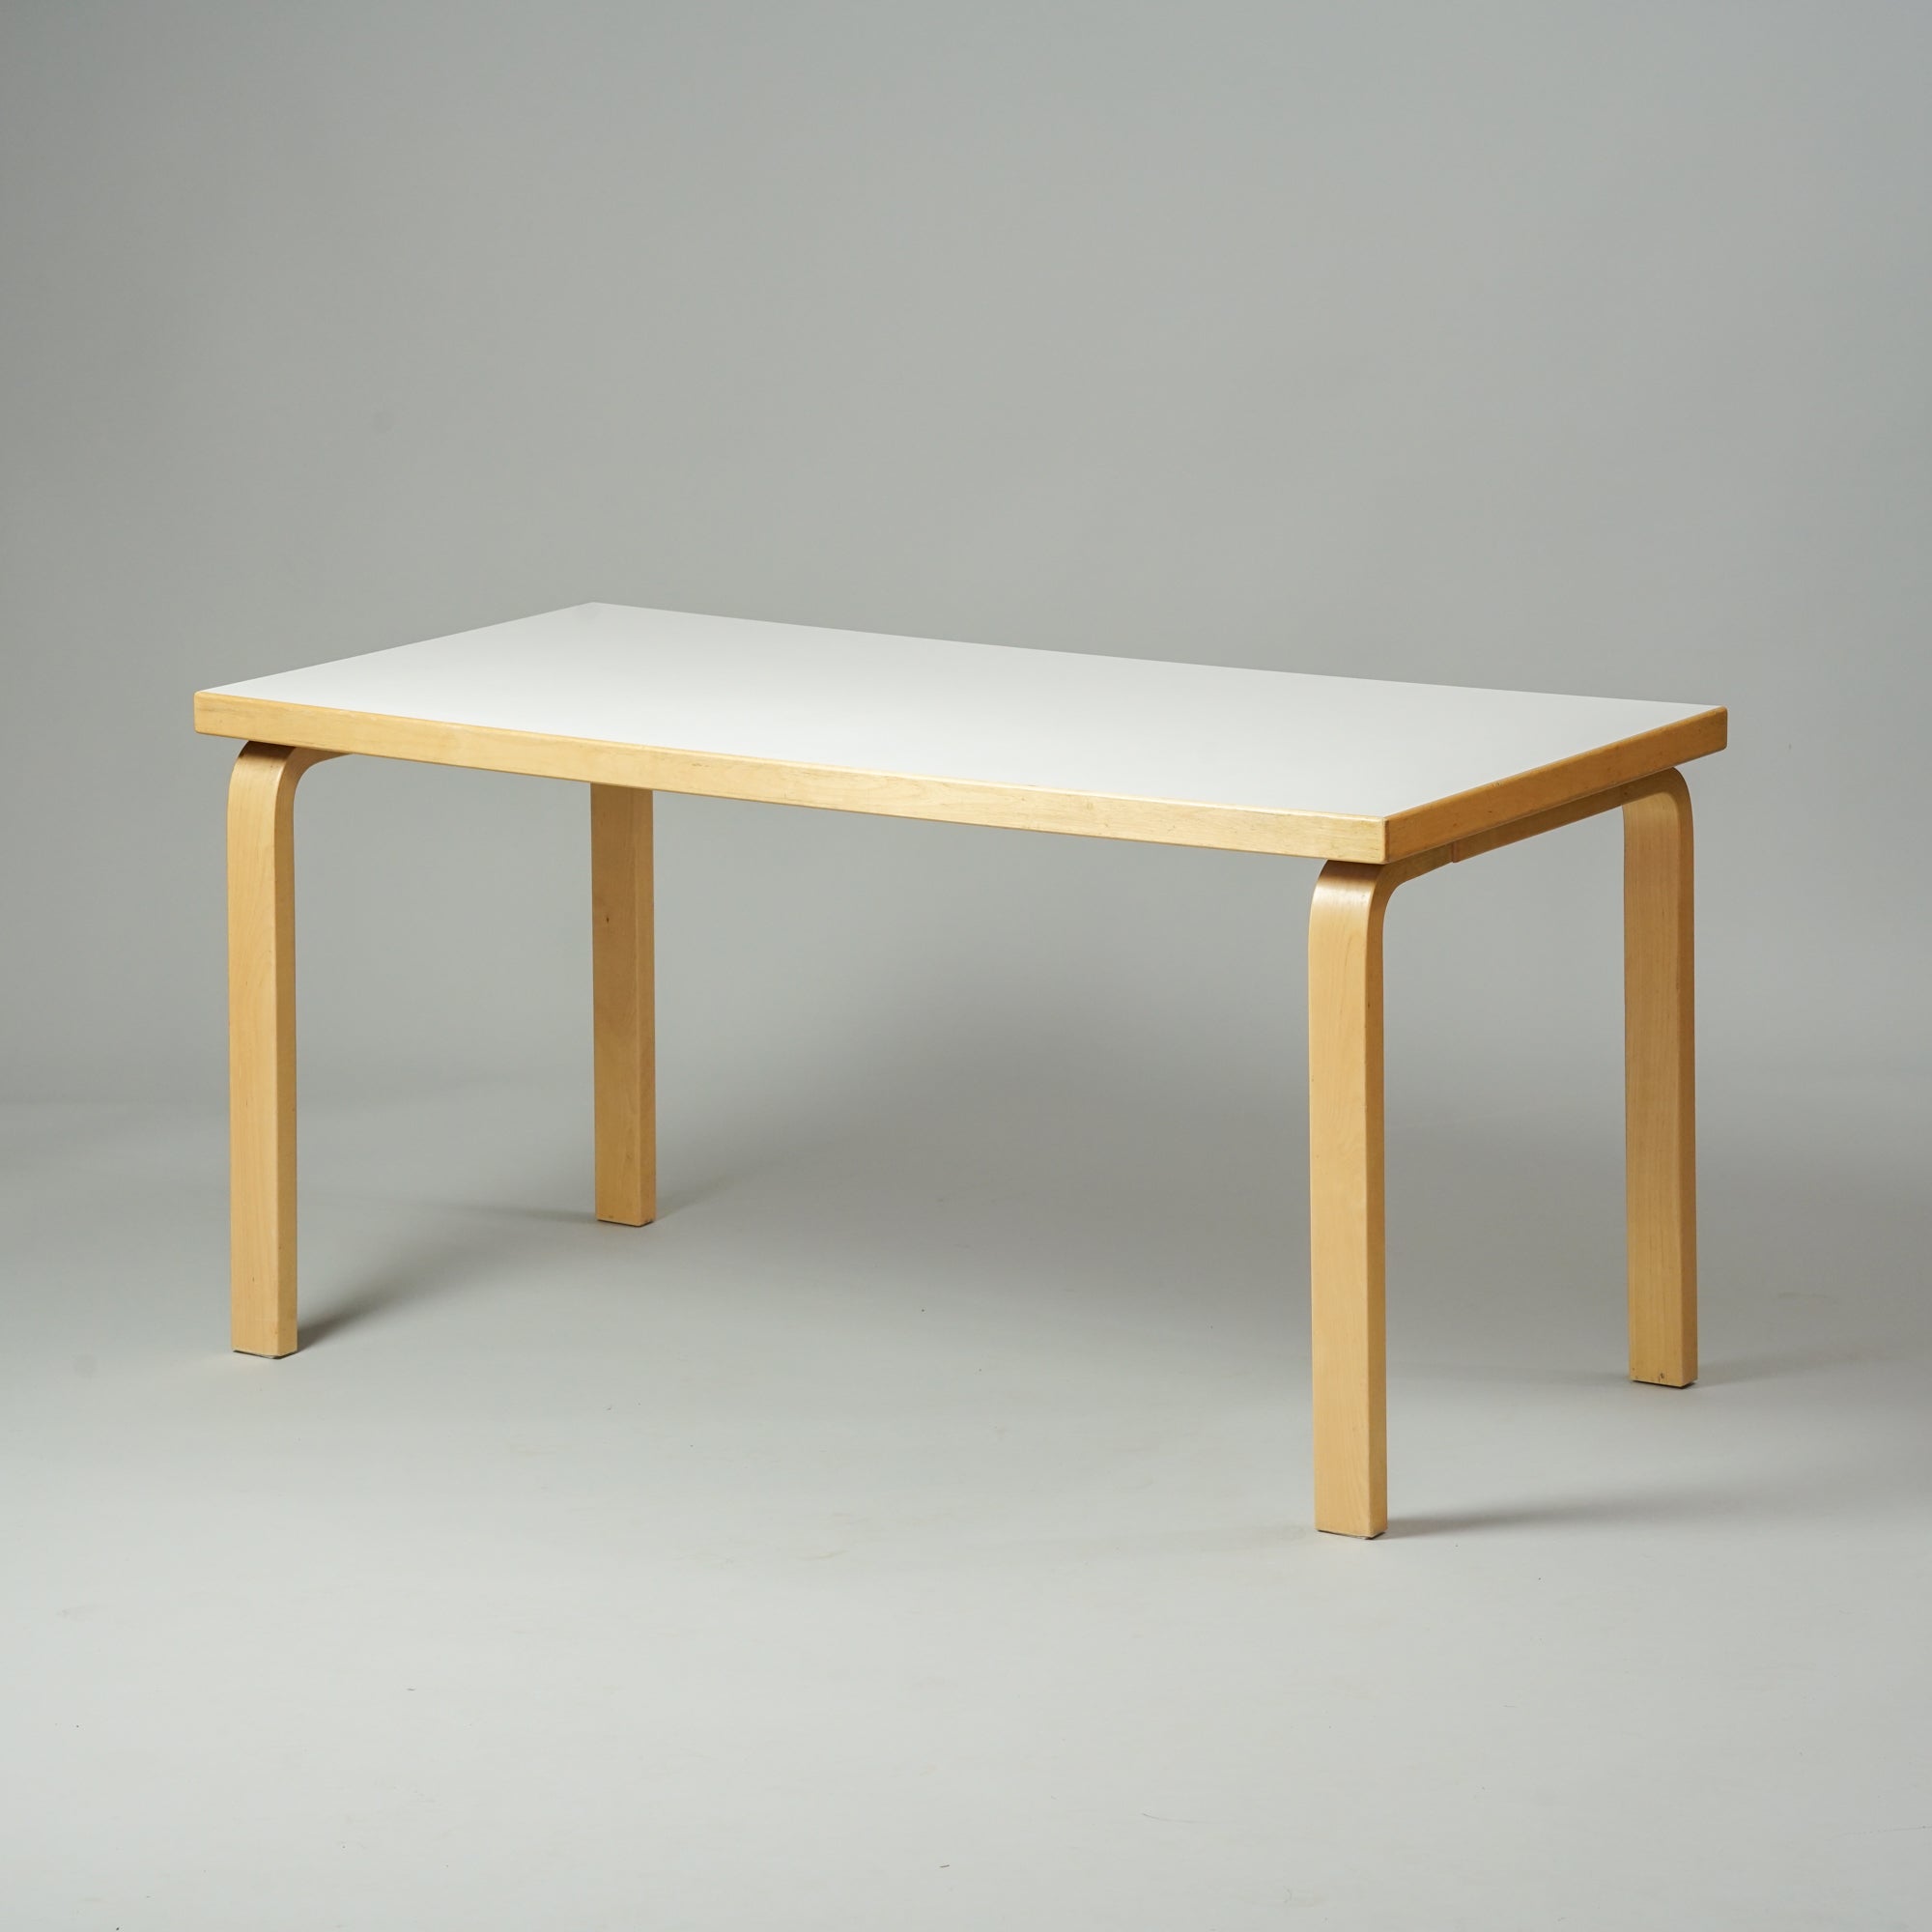 Matala pöytä, joka on tehty koivusta ja jossa on valkoinen linoleumi päällinen.